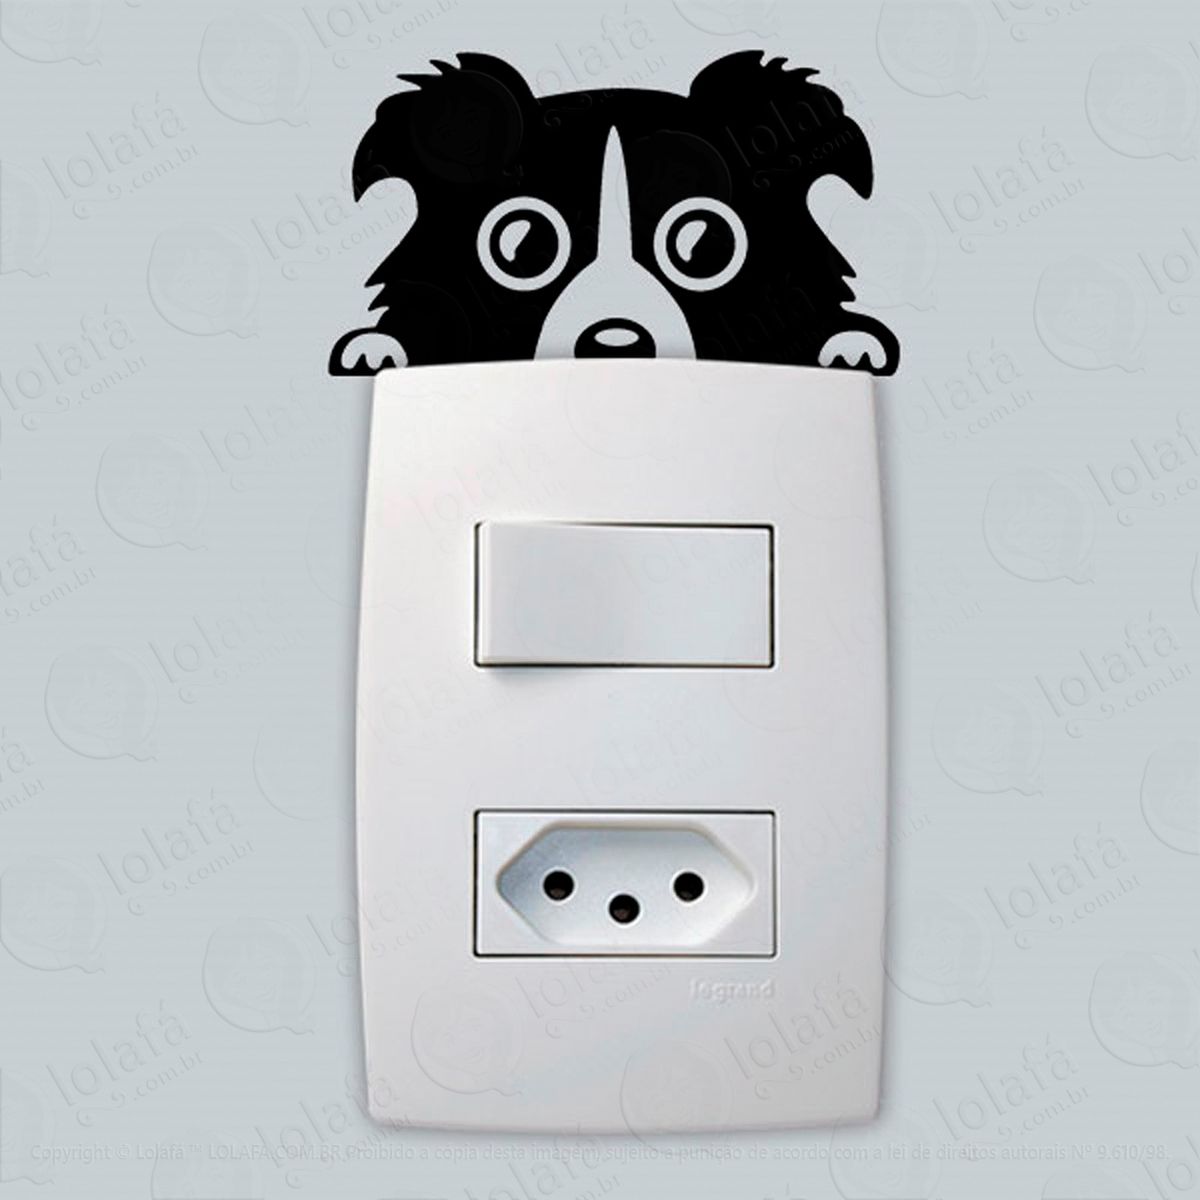 cachorrinho adesivo para interruptor e tomada - mod:2